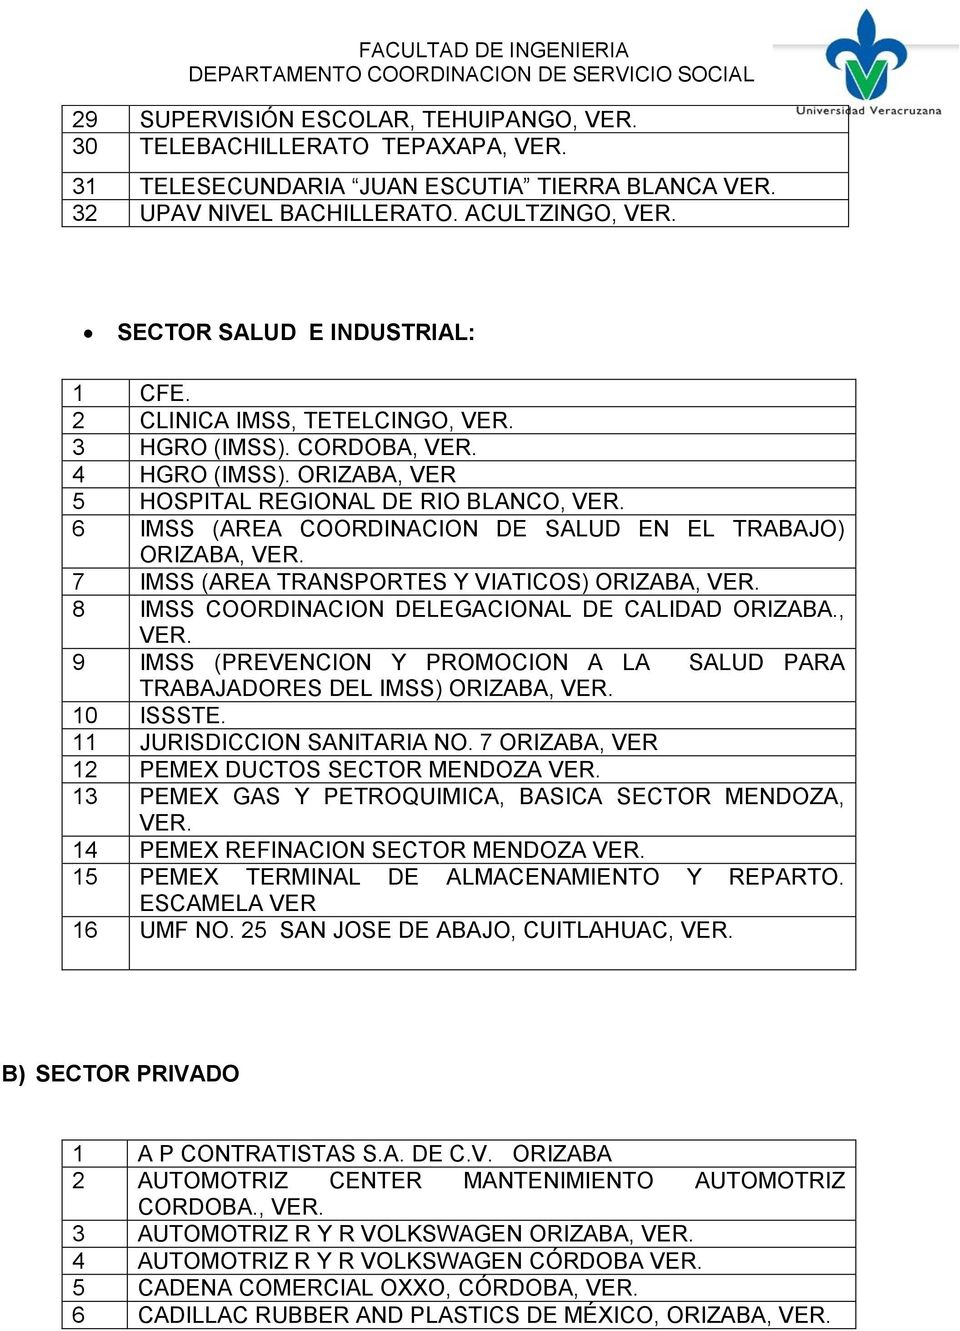 ORIZABA, VER 5 HOSPITAL REGIONAL DE RIO BLANCO, 6 IMSS (AREA COORDINACION DE SALUD EN EL TRABAJO) ORIZABA, 7 IMSS (AREA TRANSPORTES Y VIATICOS) ORIZABA, 8 IMSS COORDINACION DELEGACIONAL DE CALIDAD